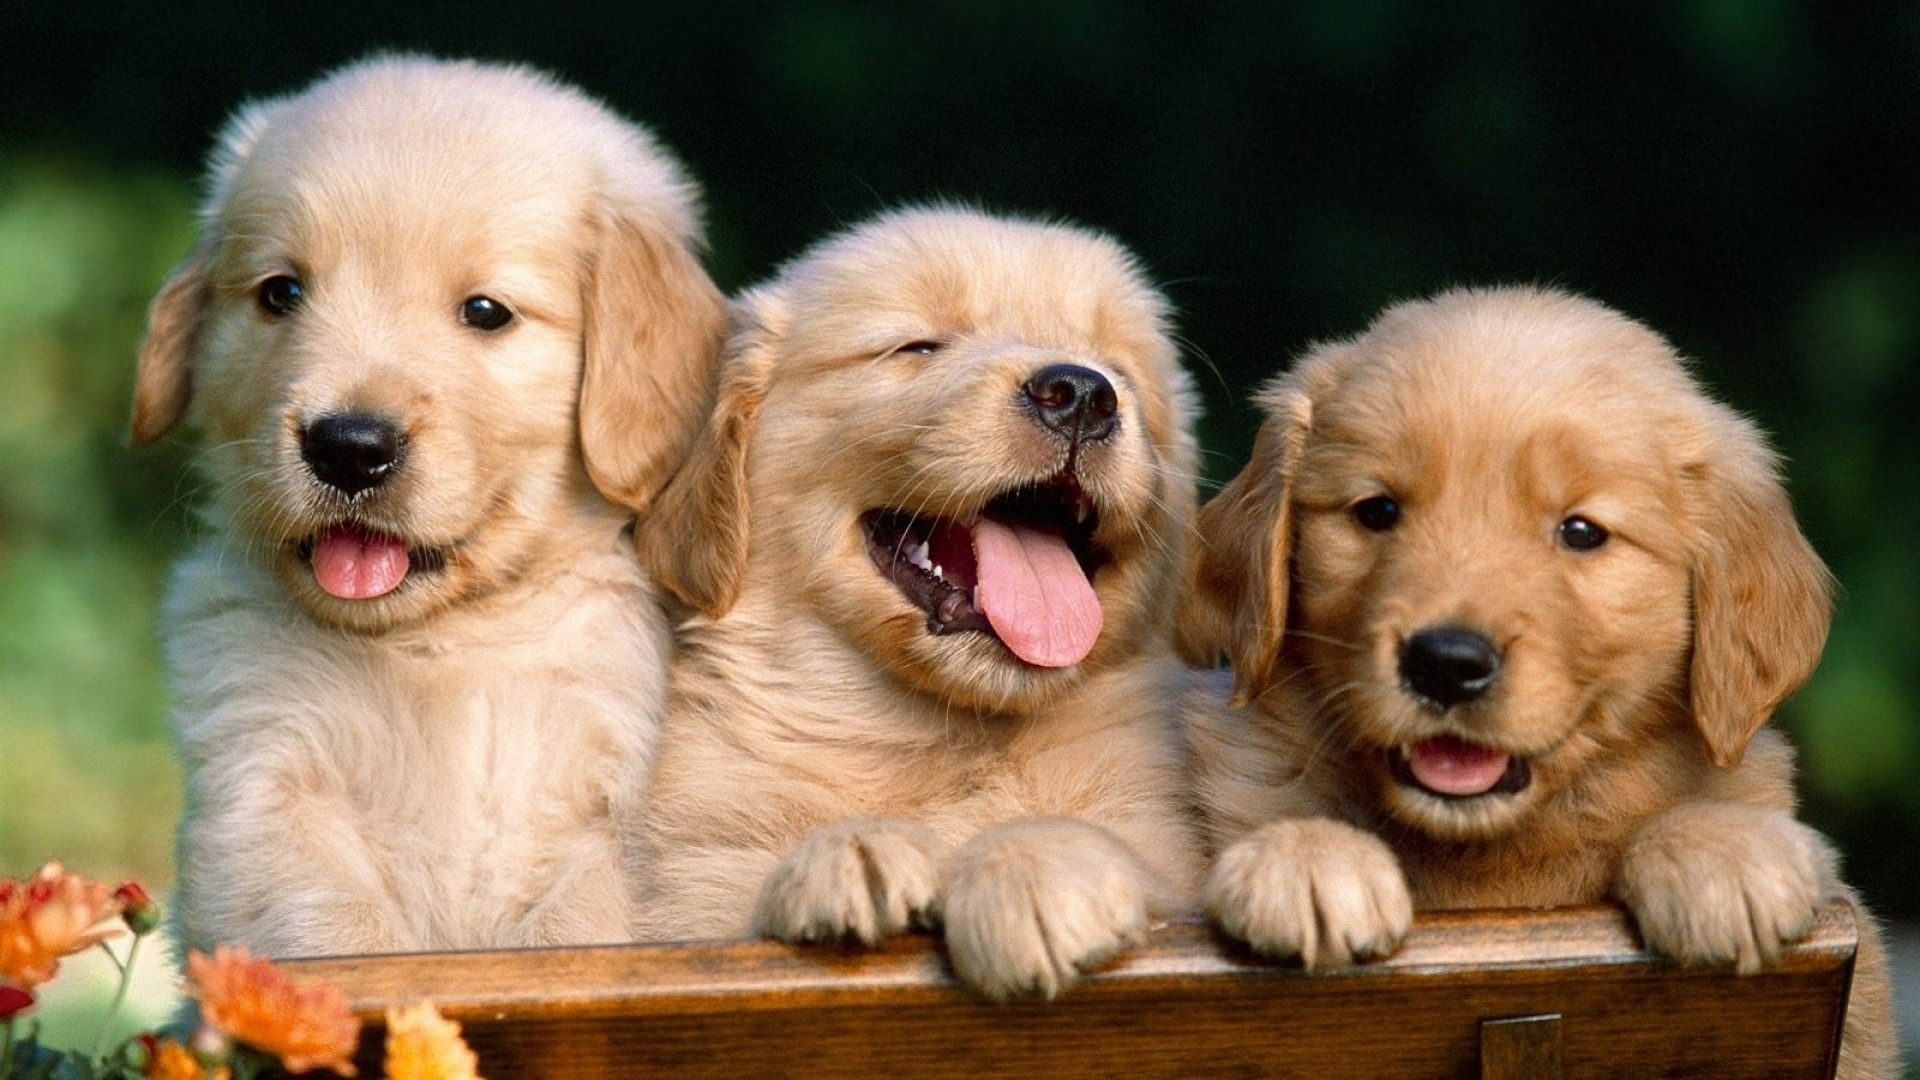 عکس jpg سه بچه سگ دوست داشتنی در طبیعت زیبا